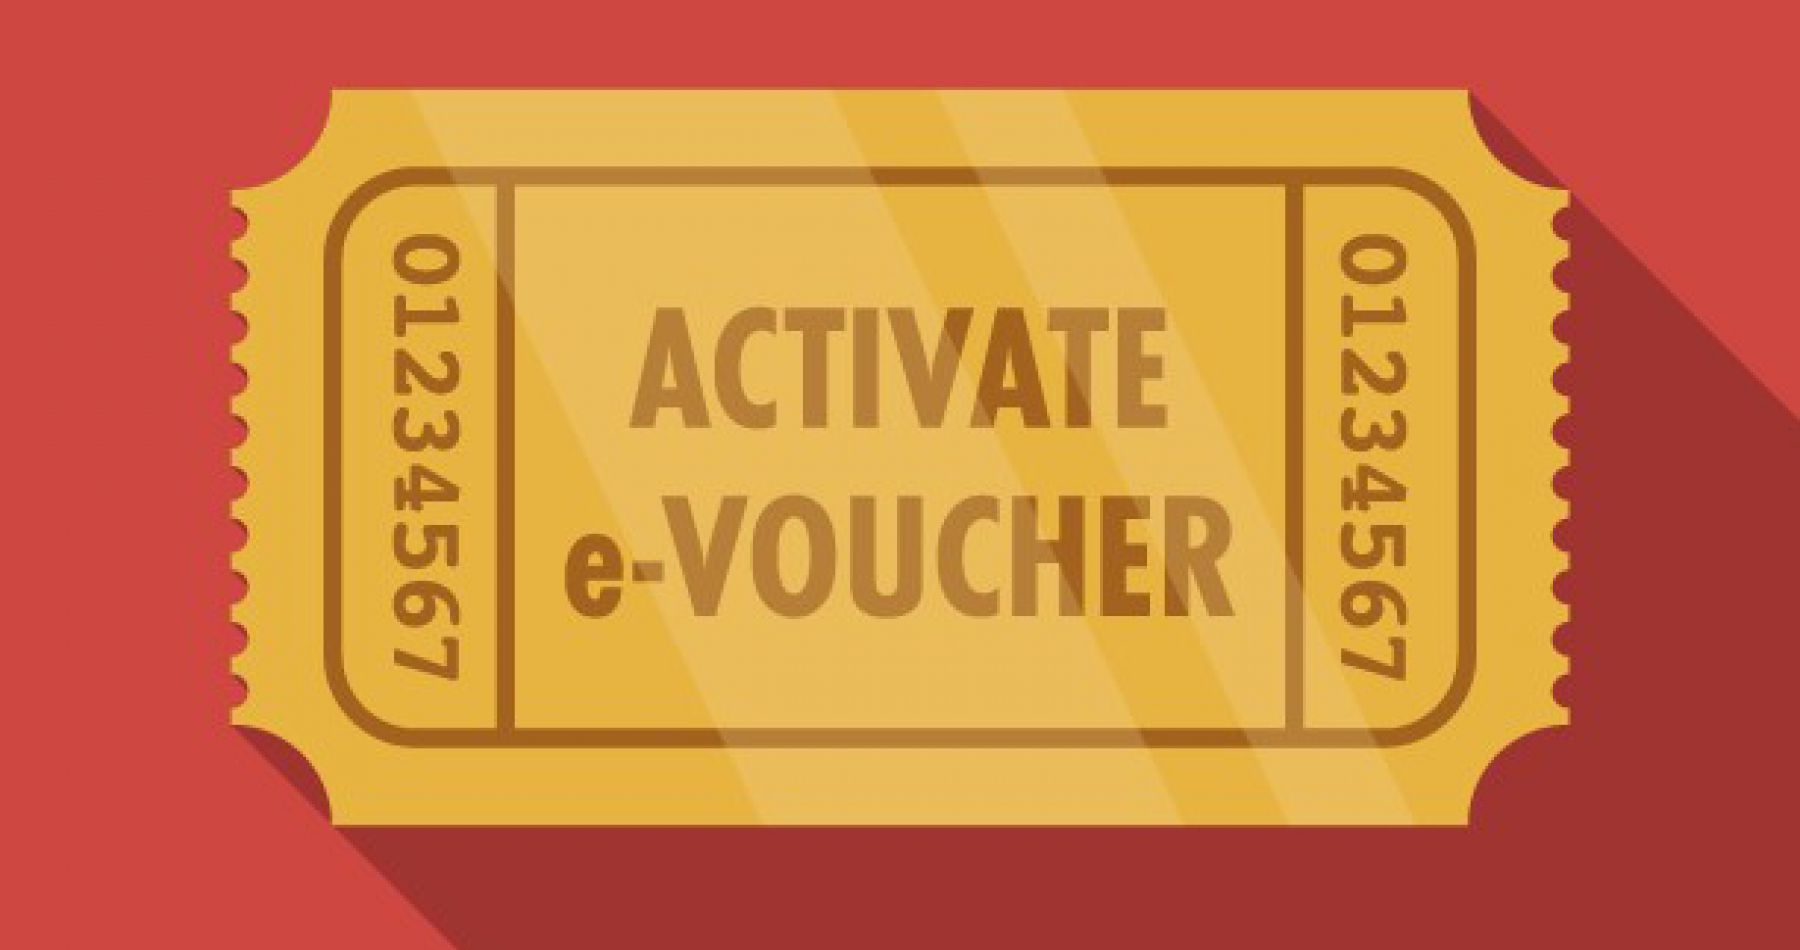 Activate your e-Voucher